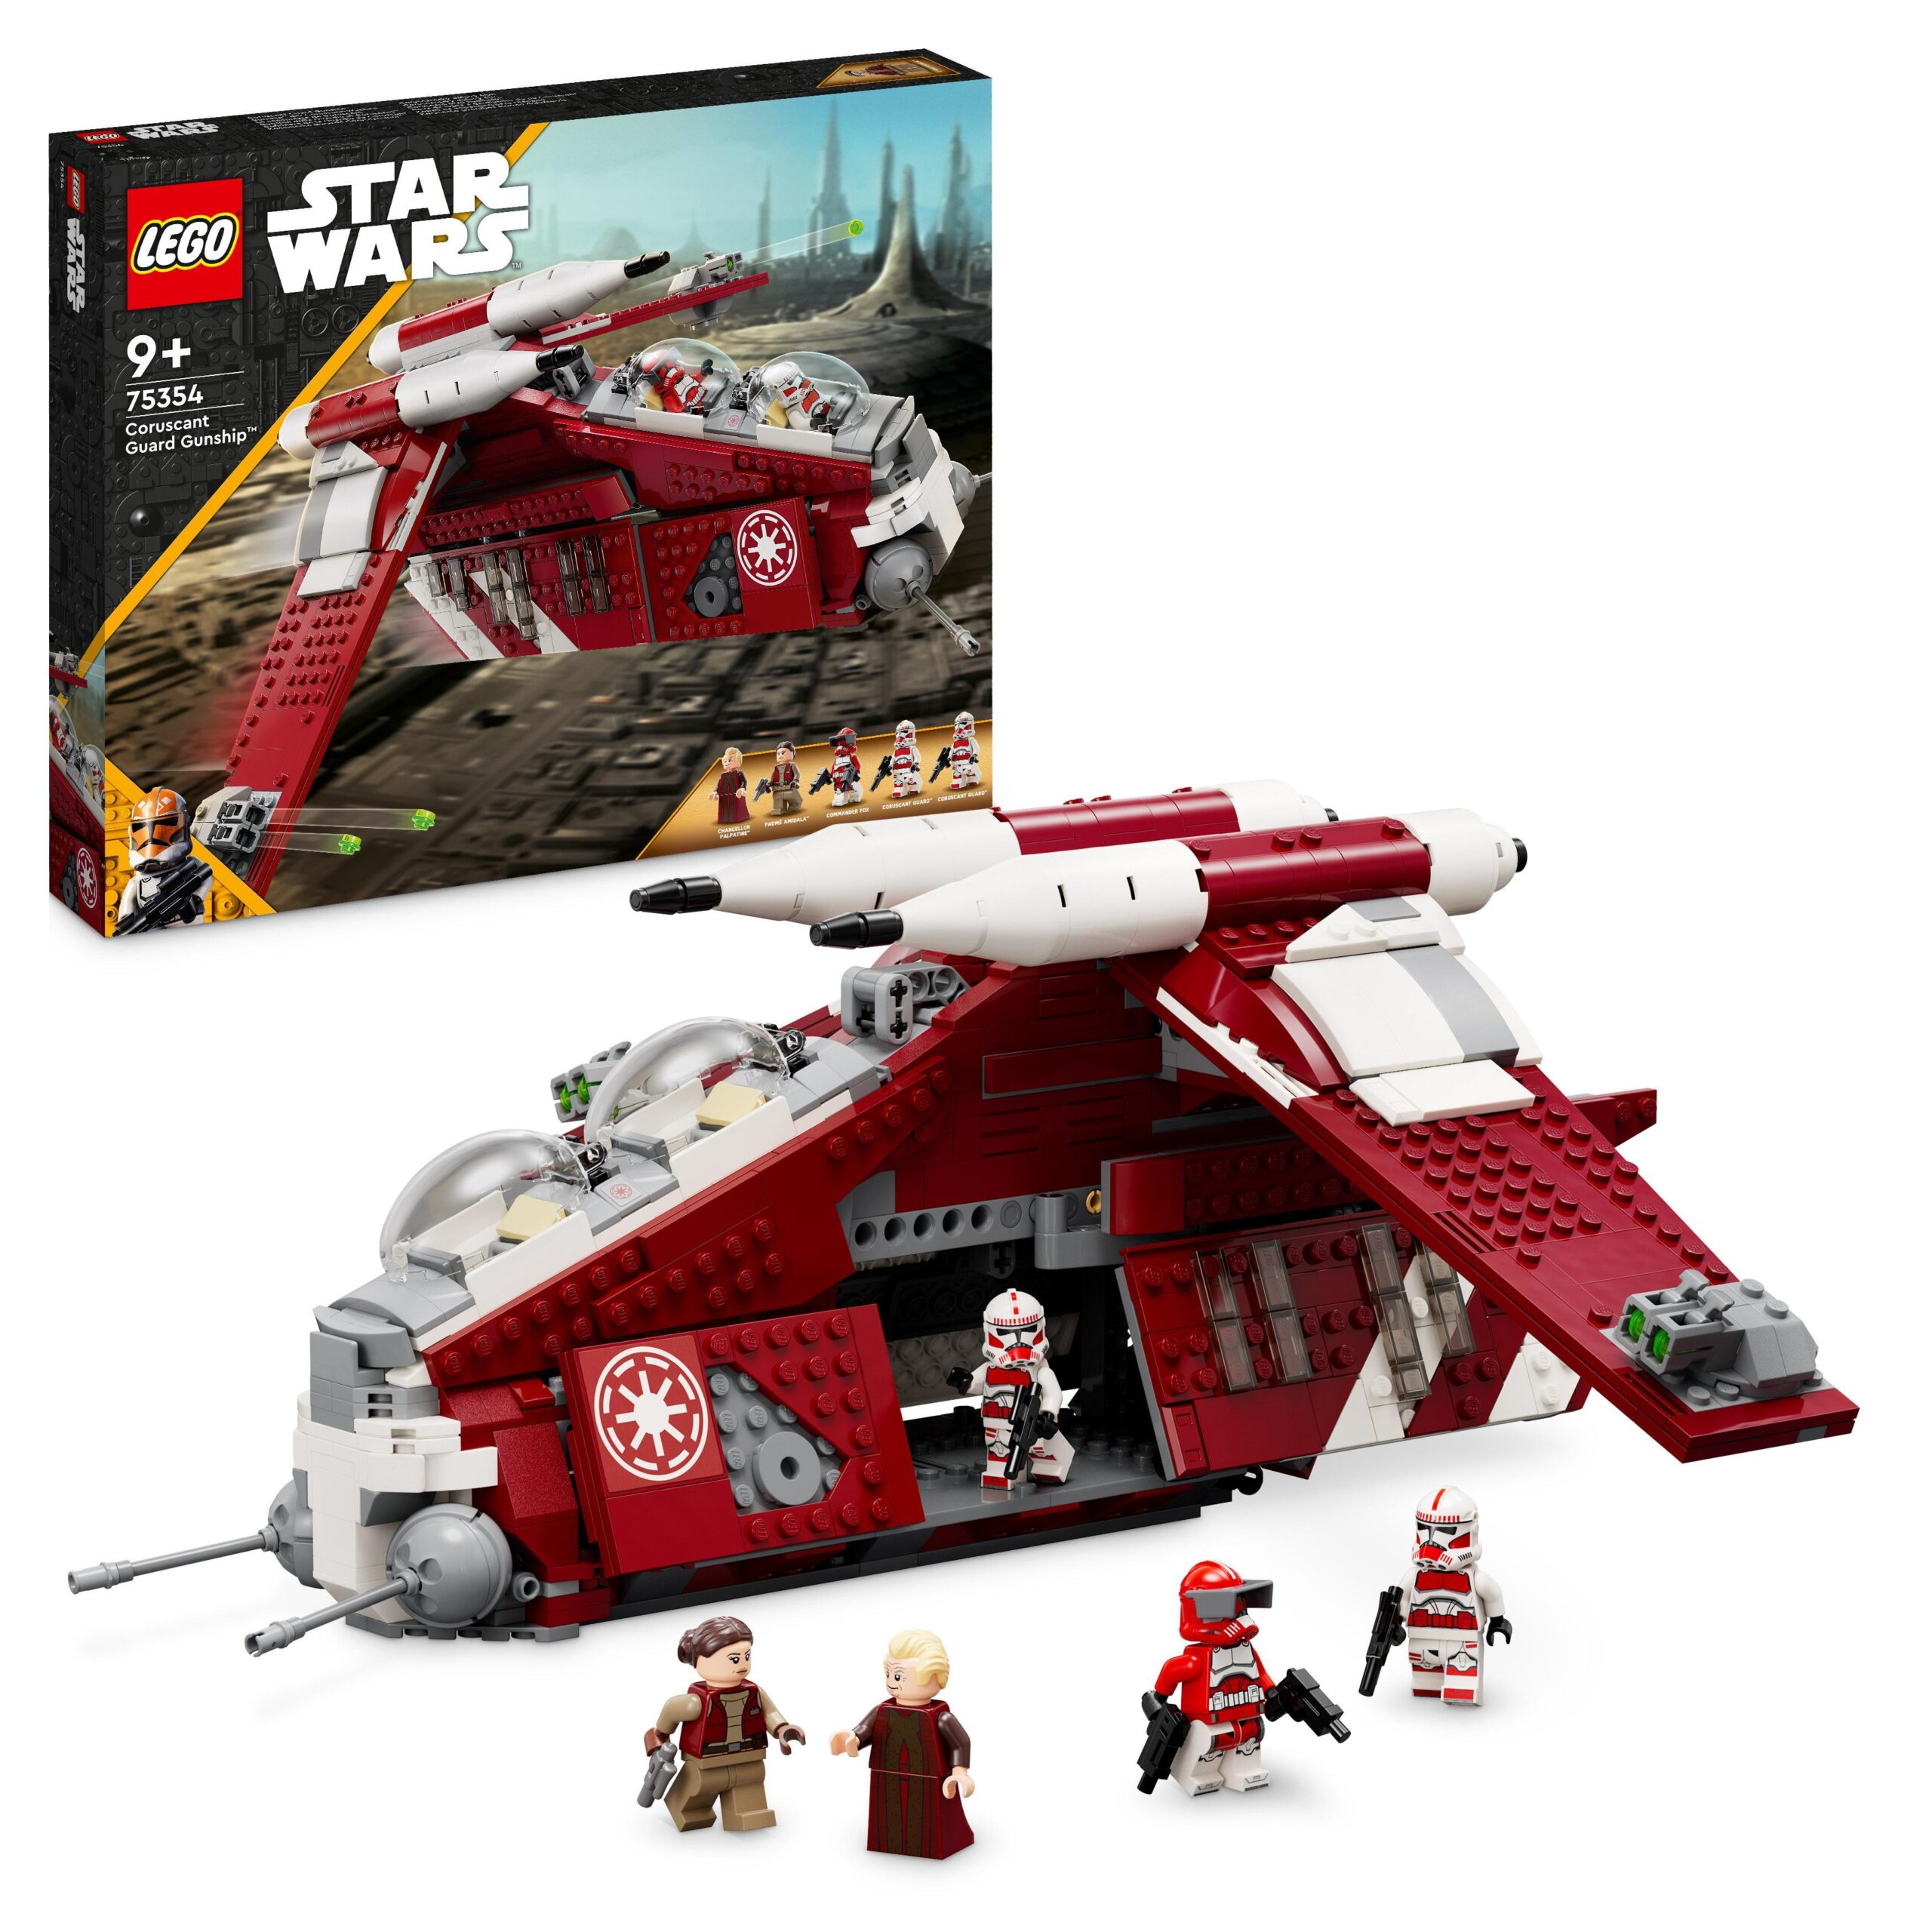 Lego star wars 75354 gunship della guardia di coruscant, set da le guerre dei cloni con veicolo giocattolo e 5 minifigure - LEGO® Star Wars™